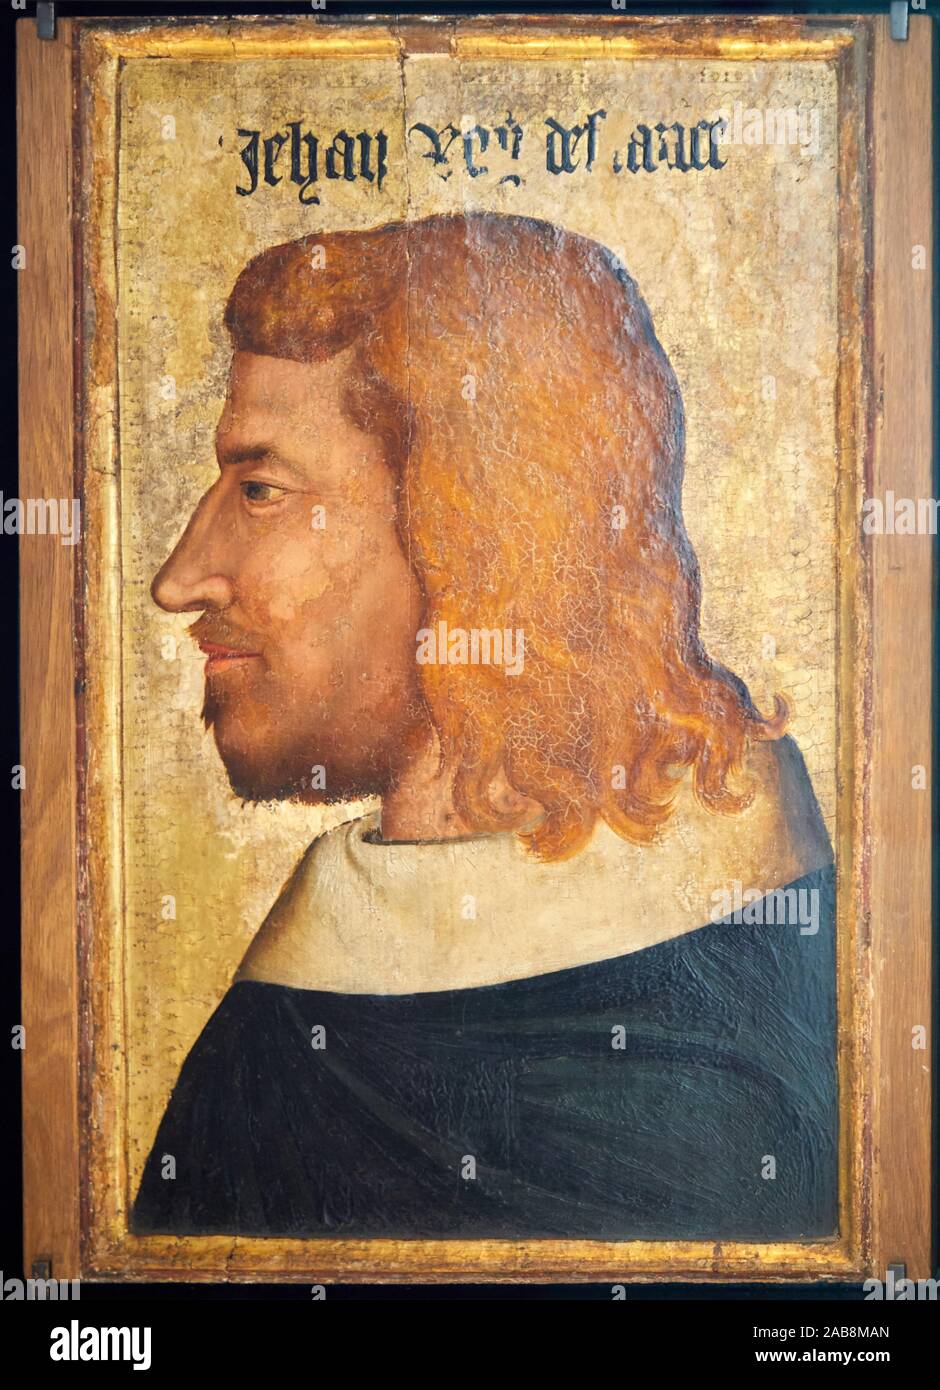 ''' Porträt von Jean II, das Gute, König von Frankreich von 1350 bis 1364'', Anonym, Musée du Louvre, Paris, Frankreich, Europa Stockfoto